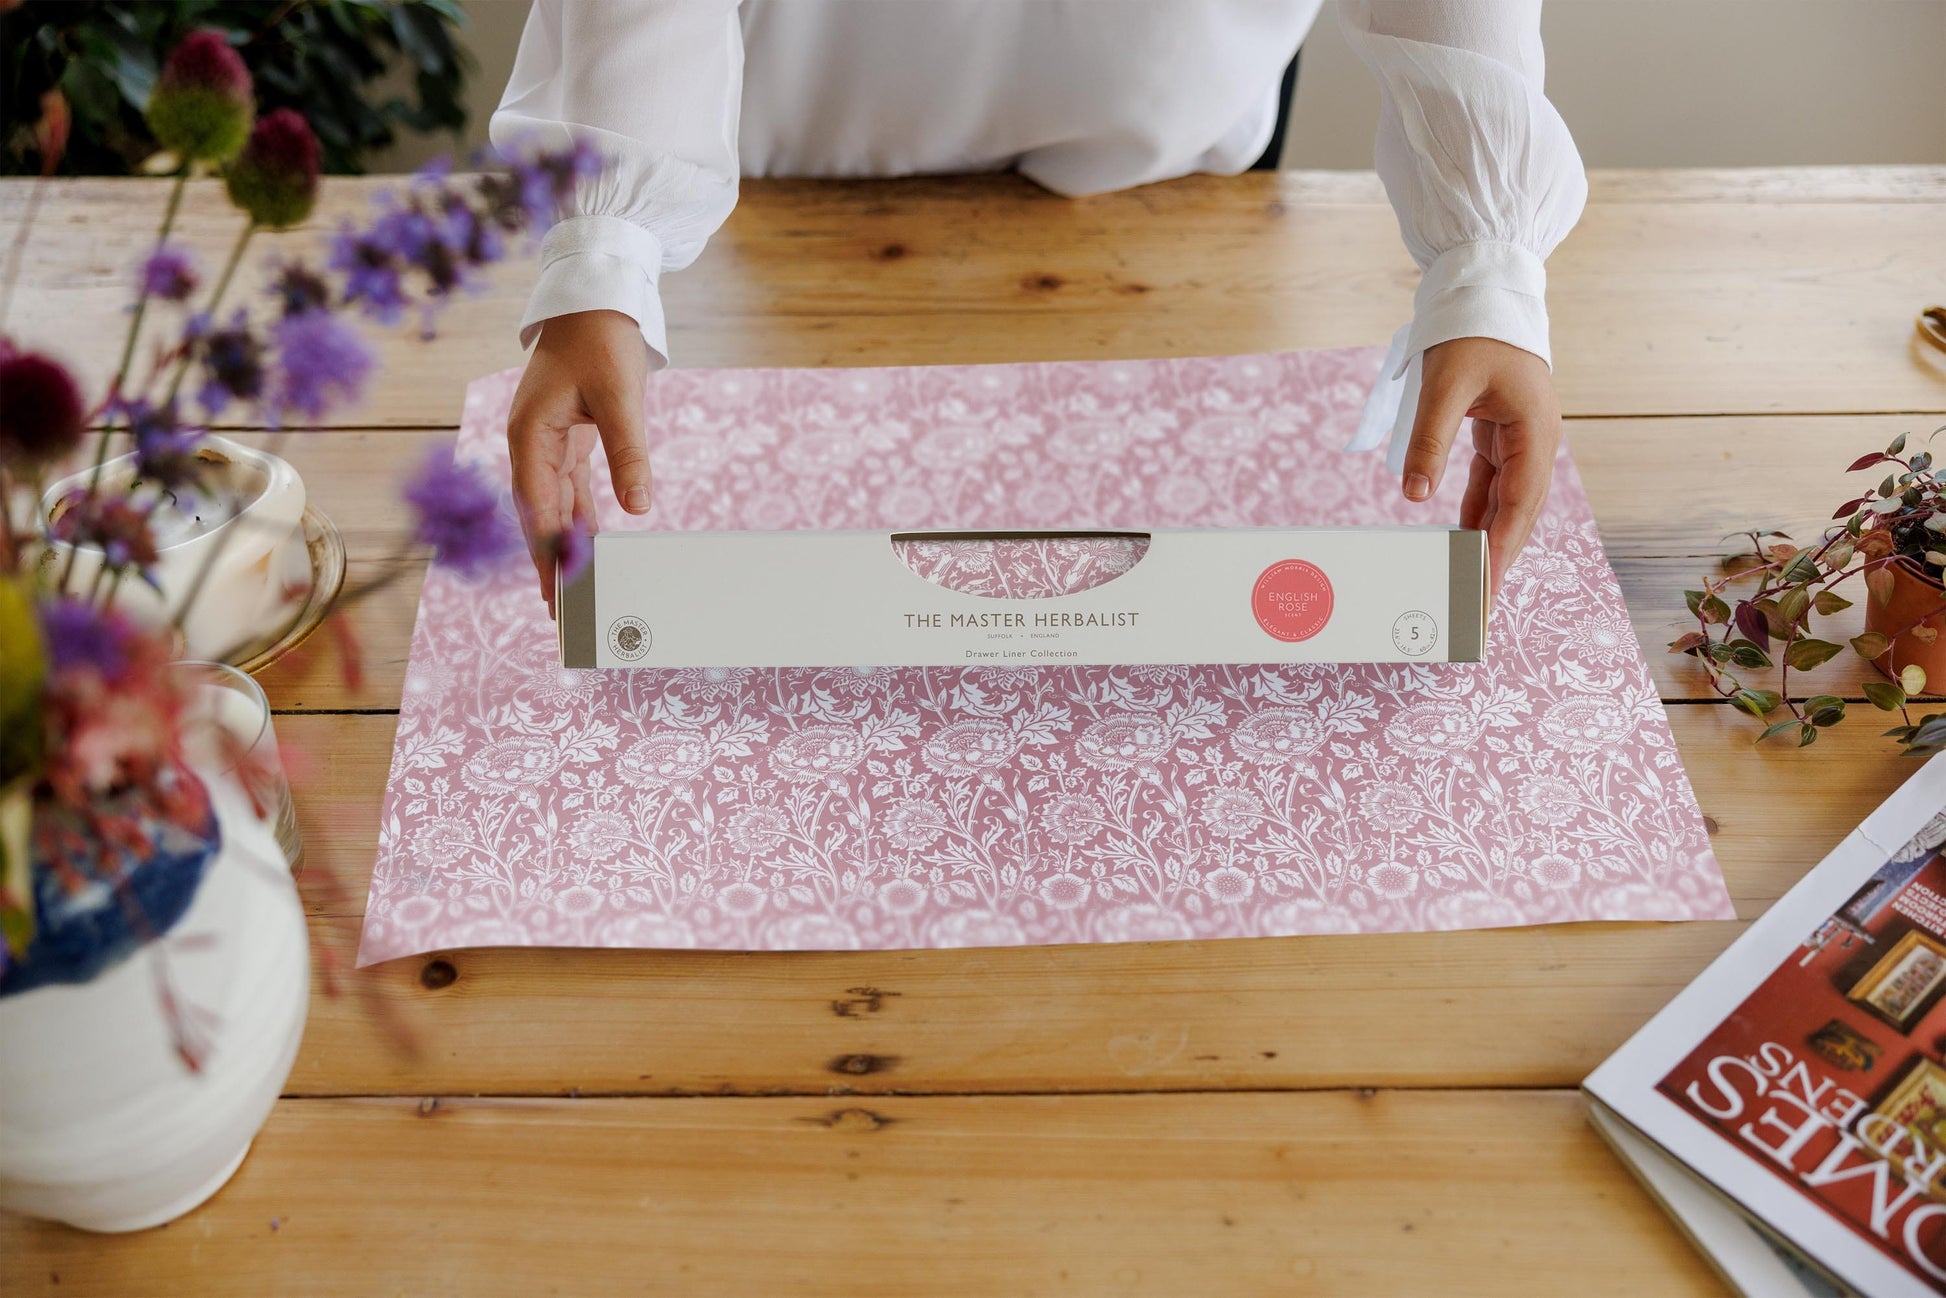 VTG Scented Drawer liner Rose Floral Print Perfumed Pink English Shelf  Paper 5pk